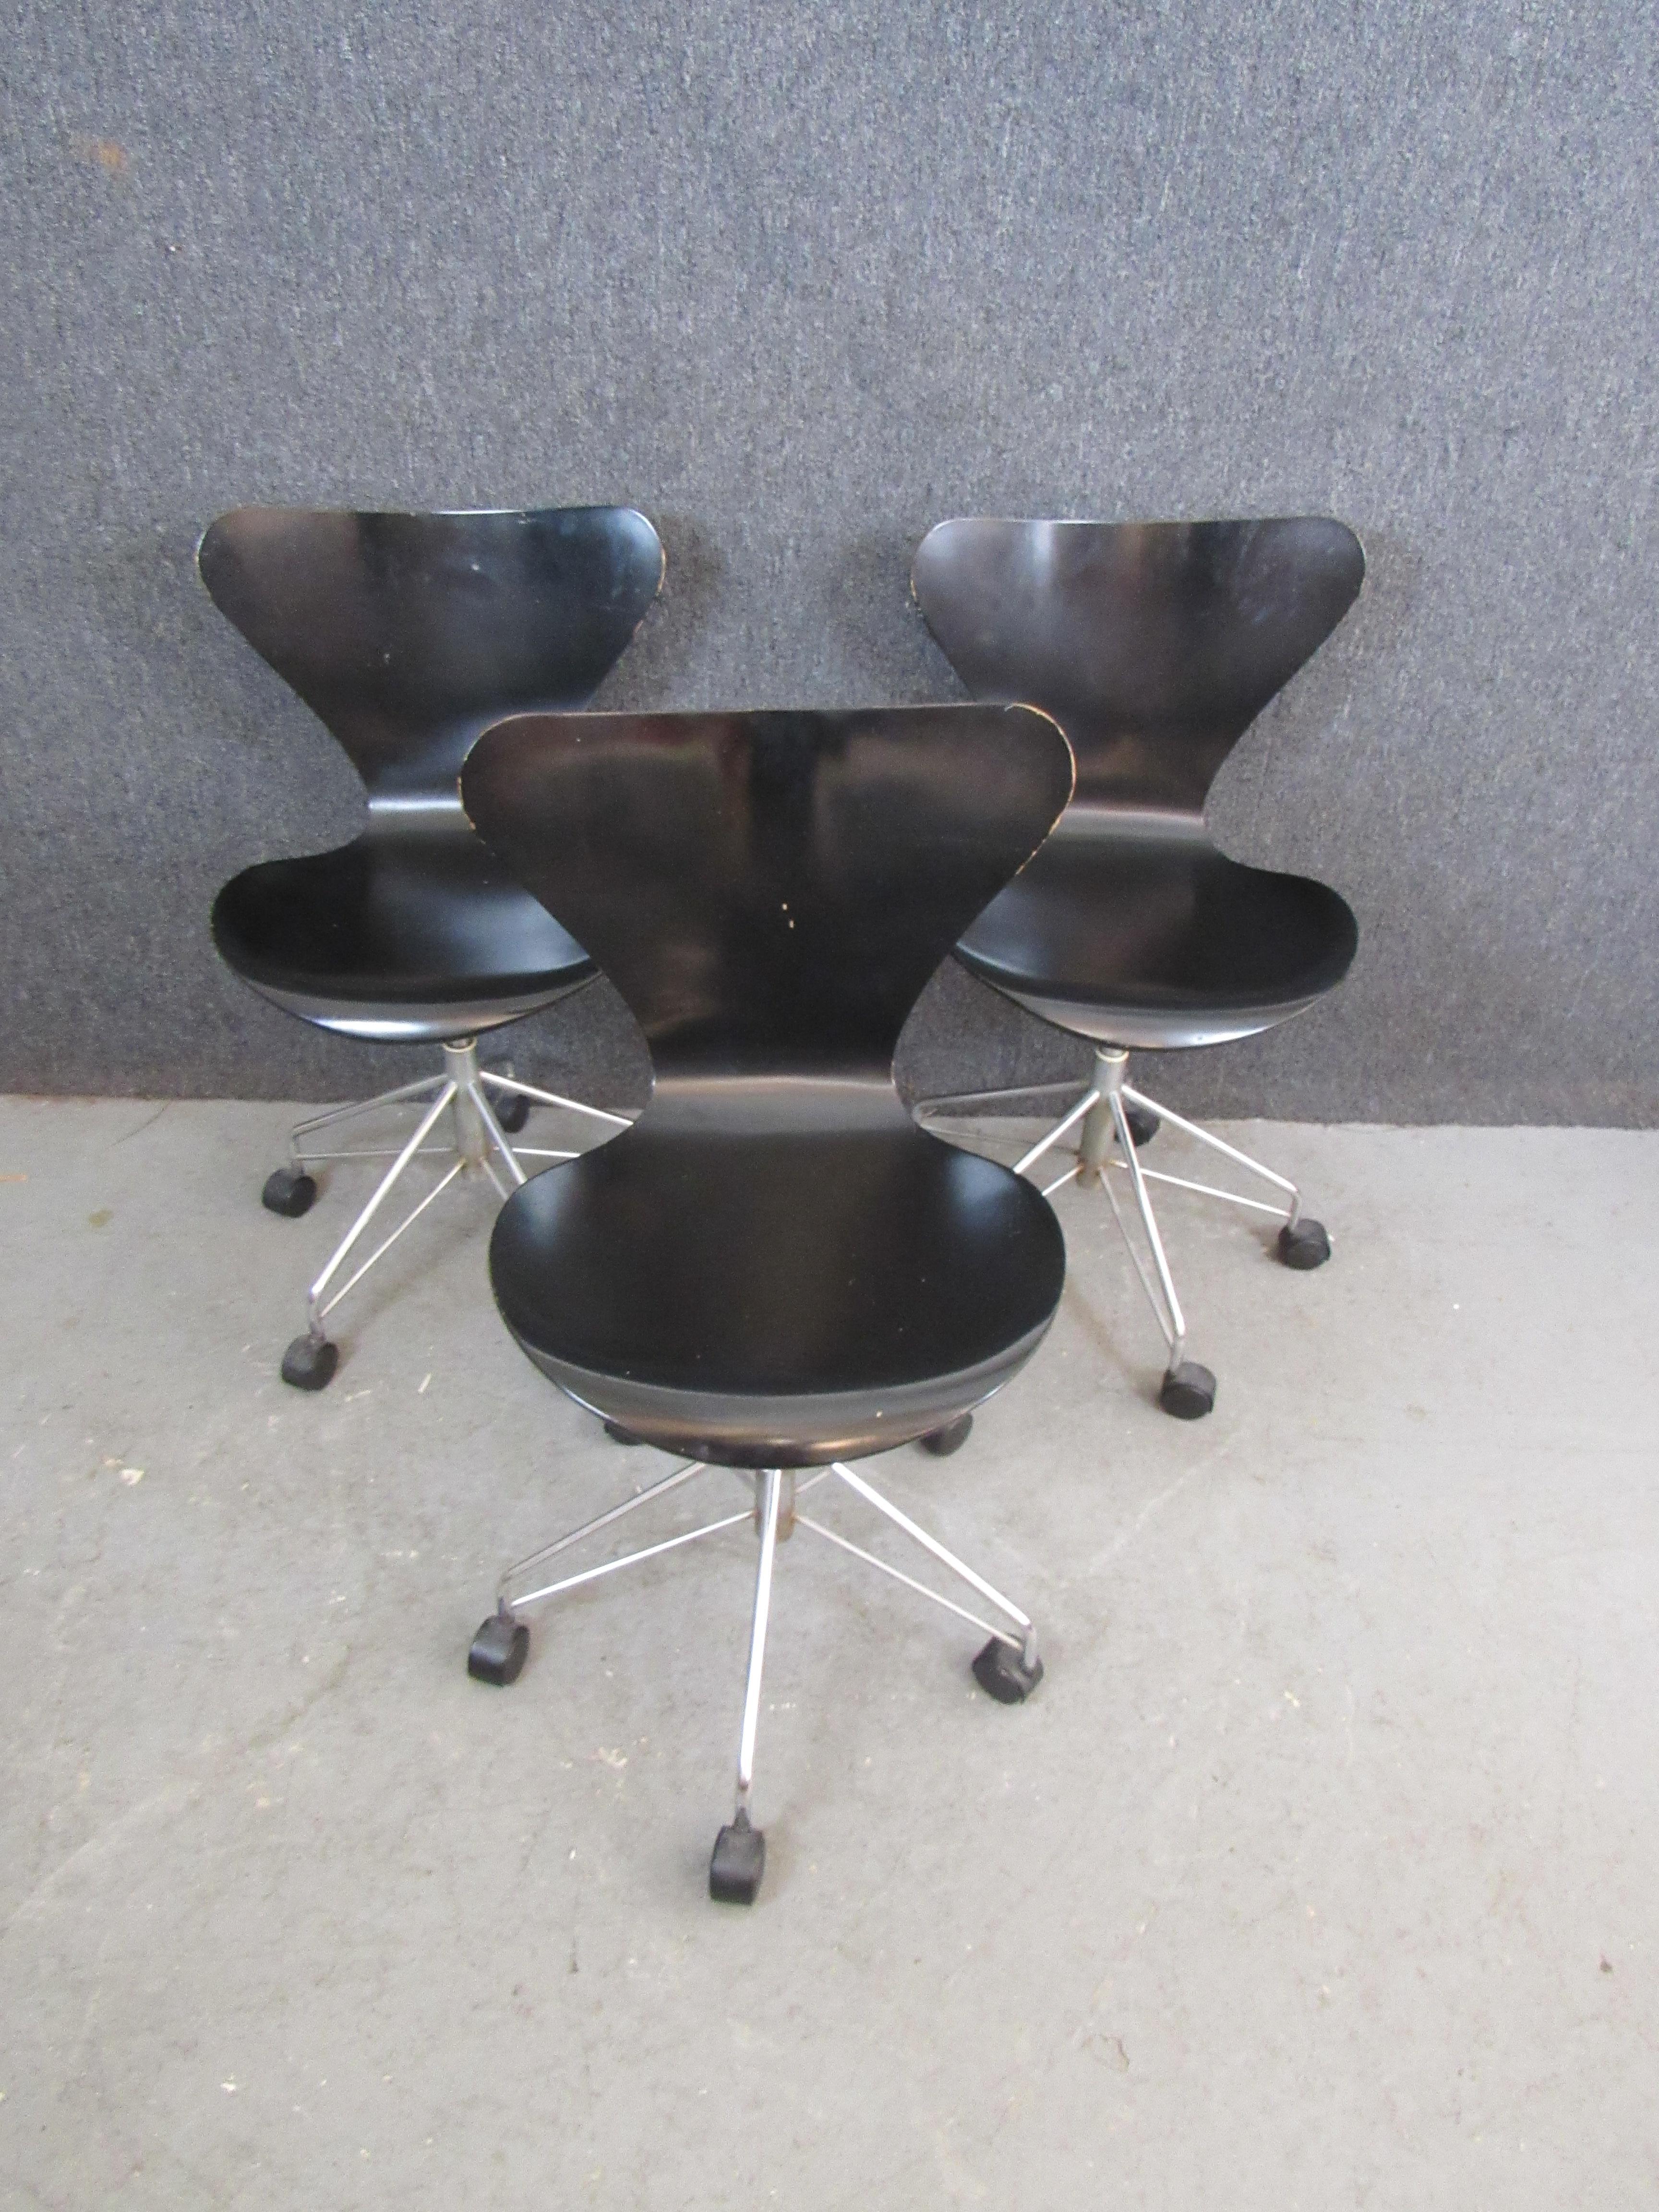 Donnez à votre bureau une touche mid-century avec ces chaises de bureau classiques Arne Jacobsen de Fritz Hansen. Icône du design moderne danois, l'inimitable chaise 